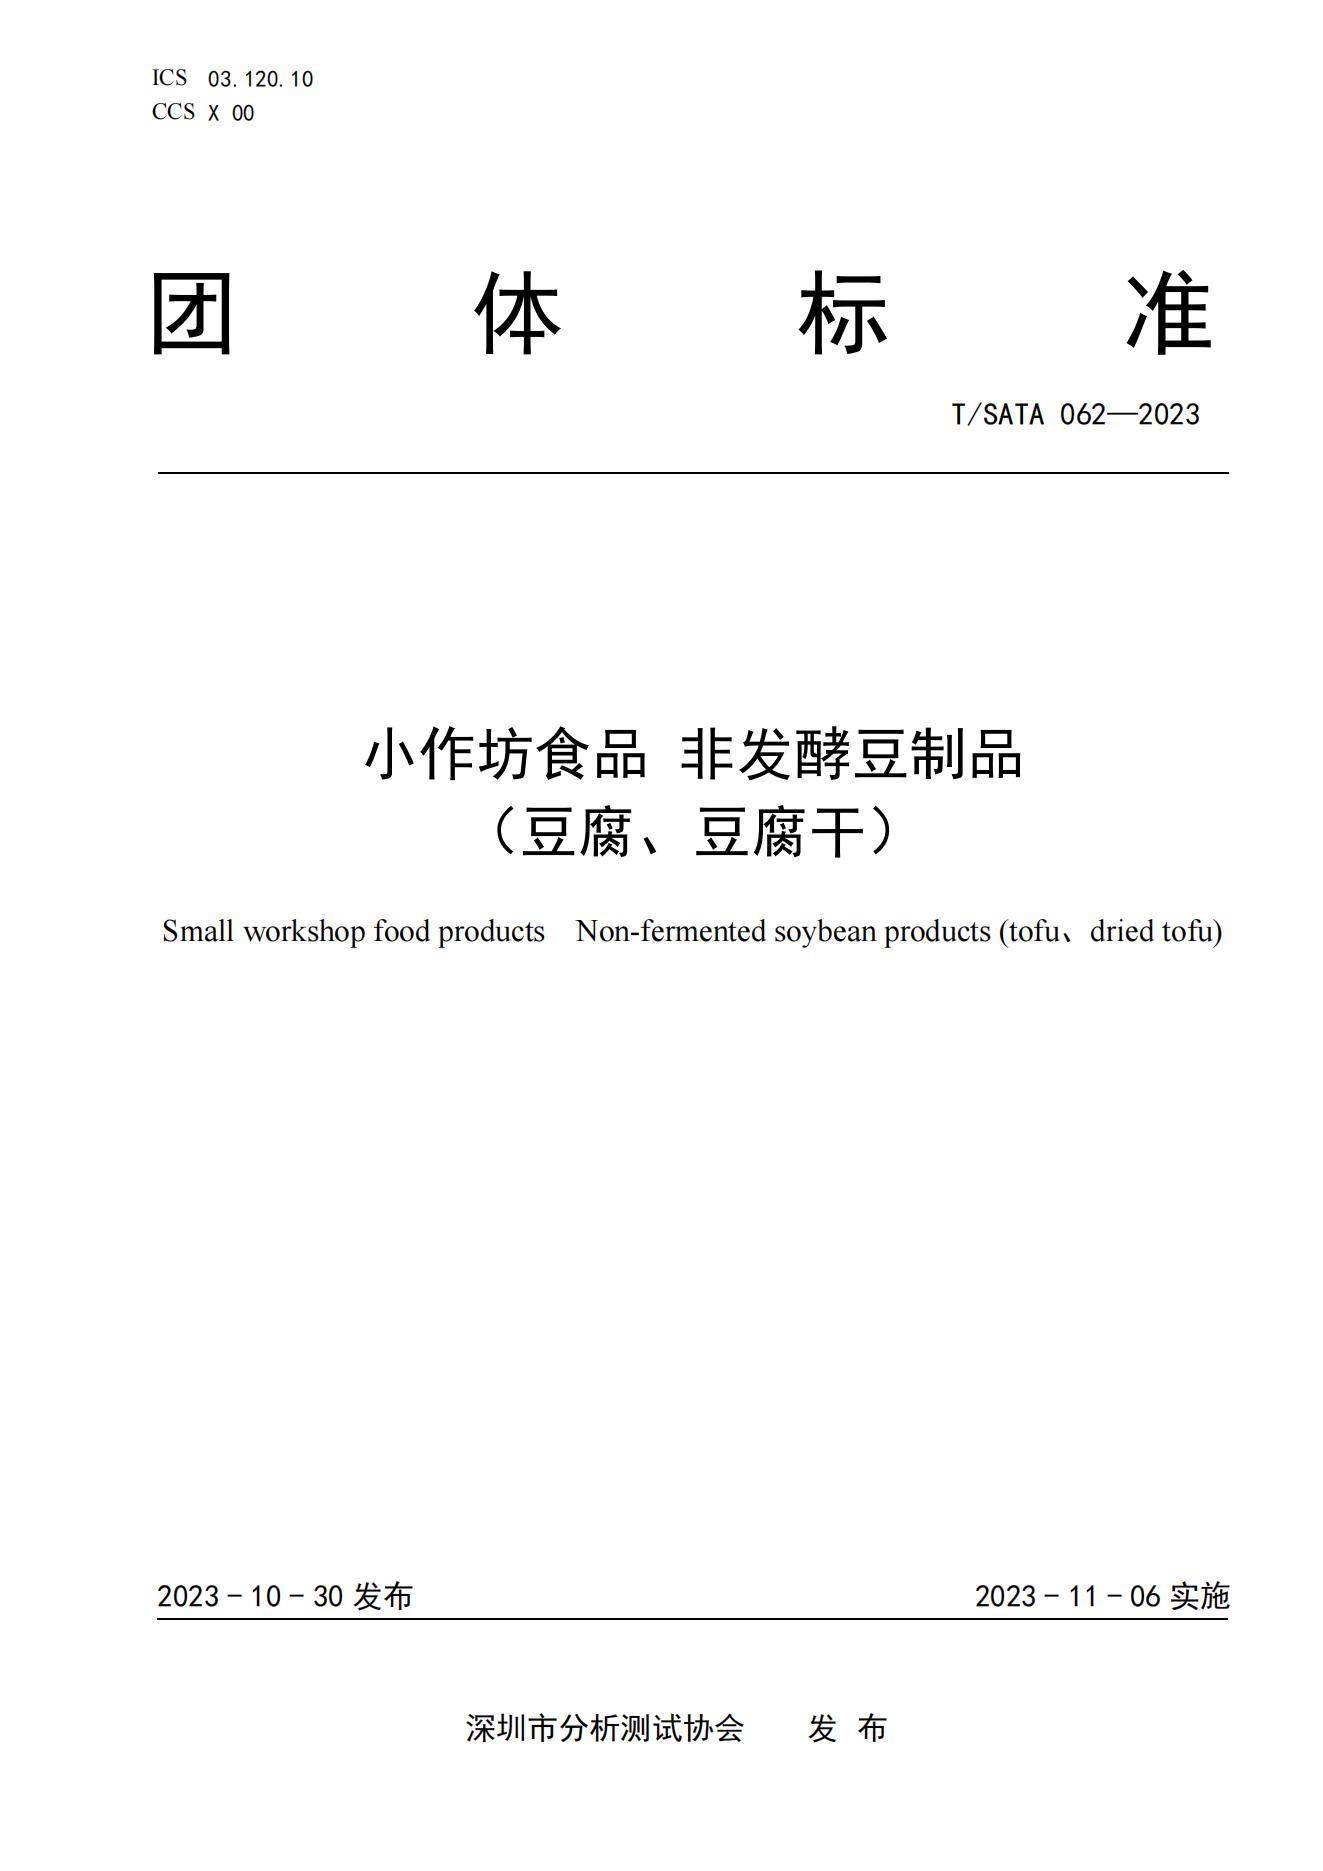 TSATA 062-2023标准文本-小作坊食品  非发酵豆制品（豆腐、豆腐干）_00.jpg